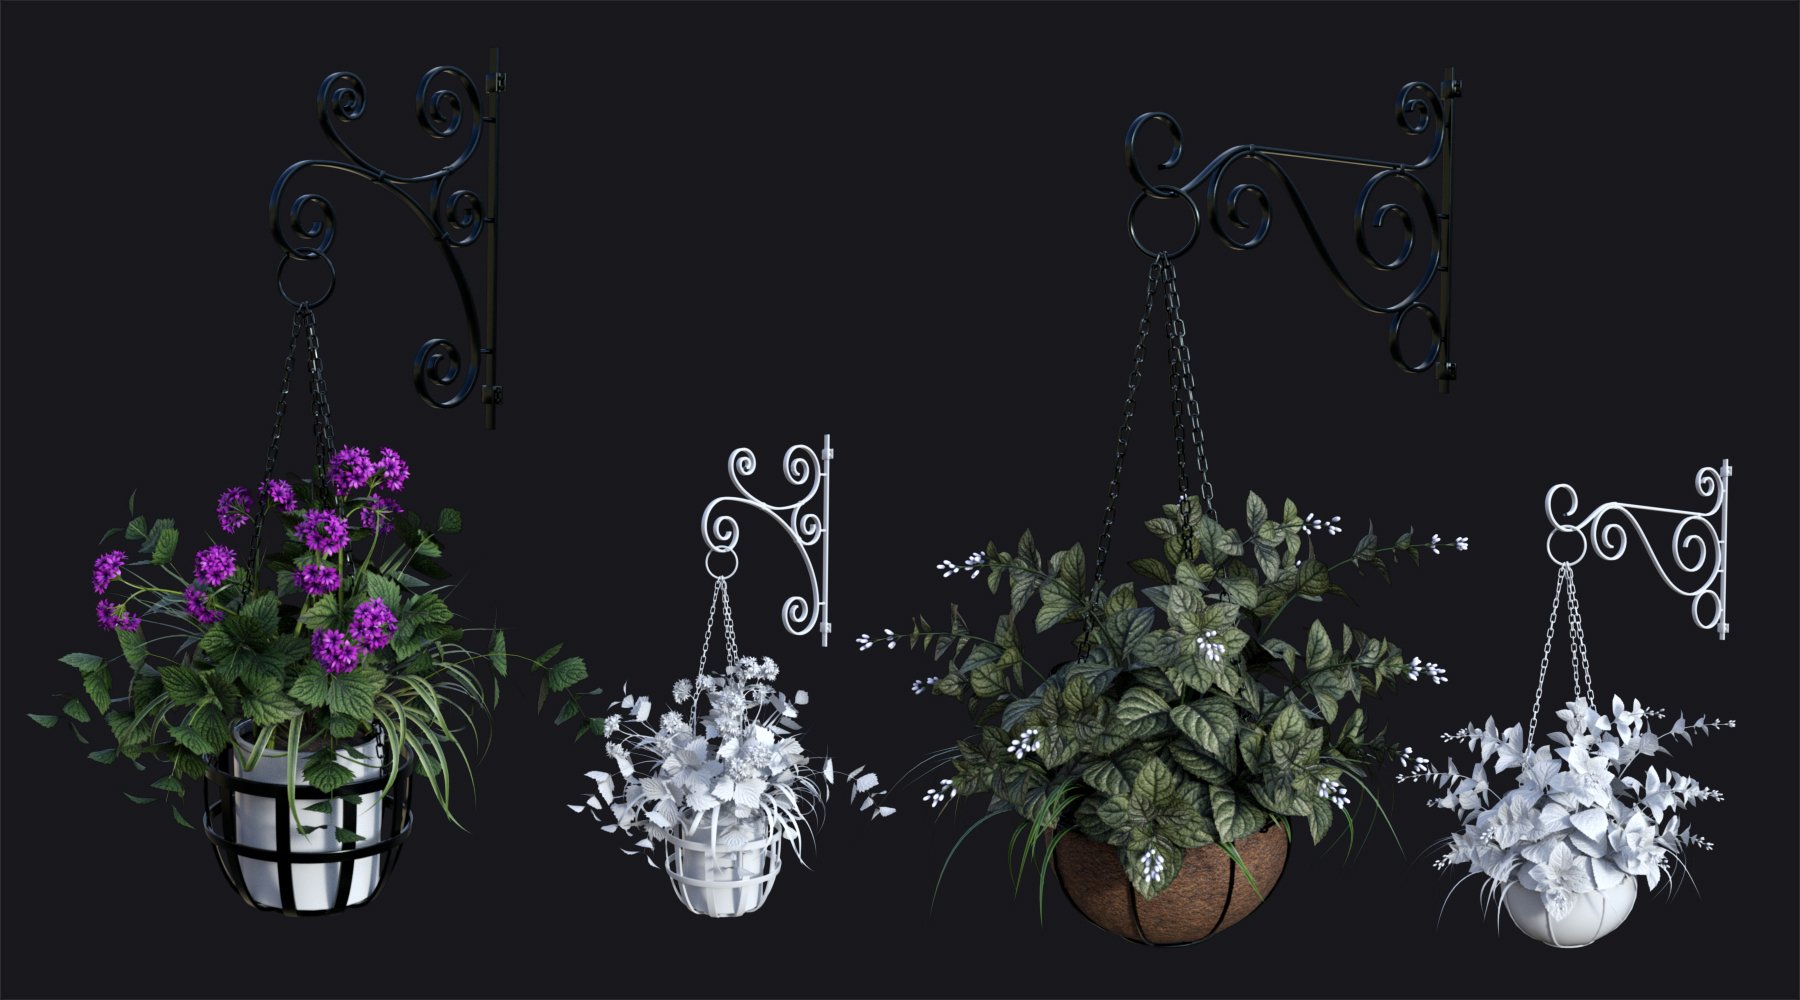 DGV Miniature Gardens vol 3 Hanging Plants by: DG Vertex, 3D Models by Daz 3D